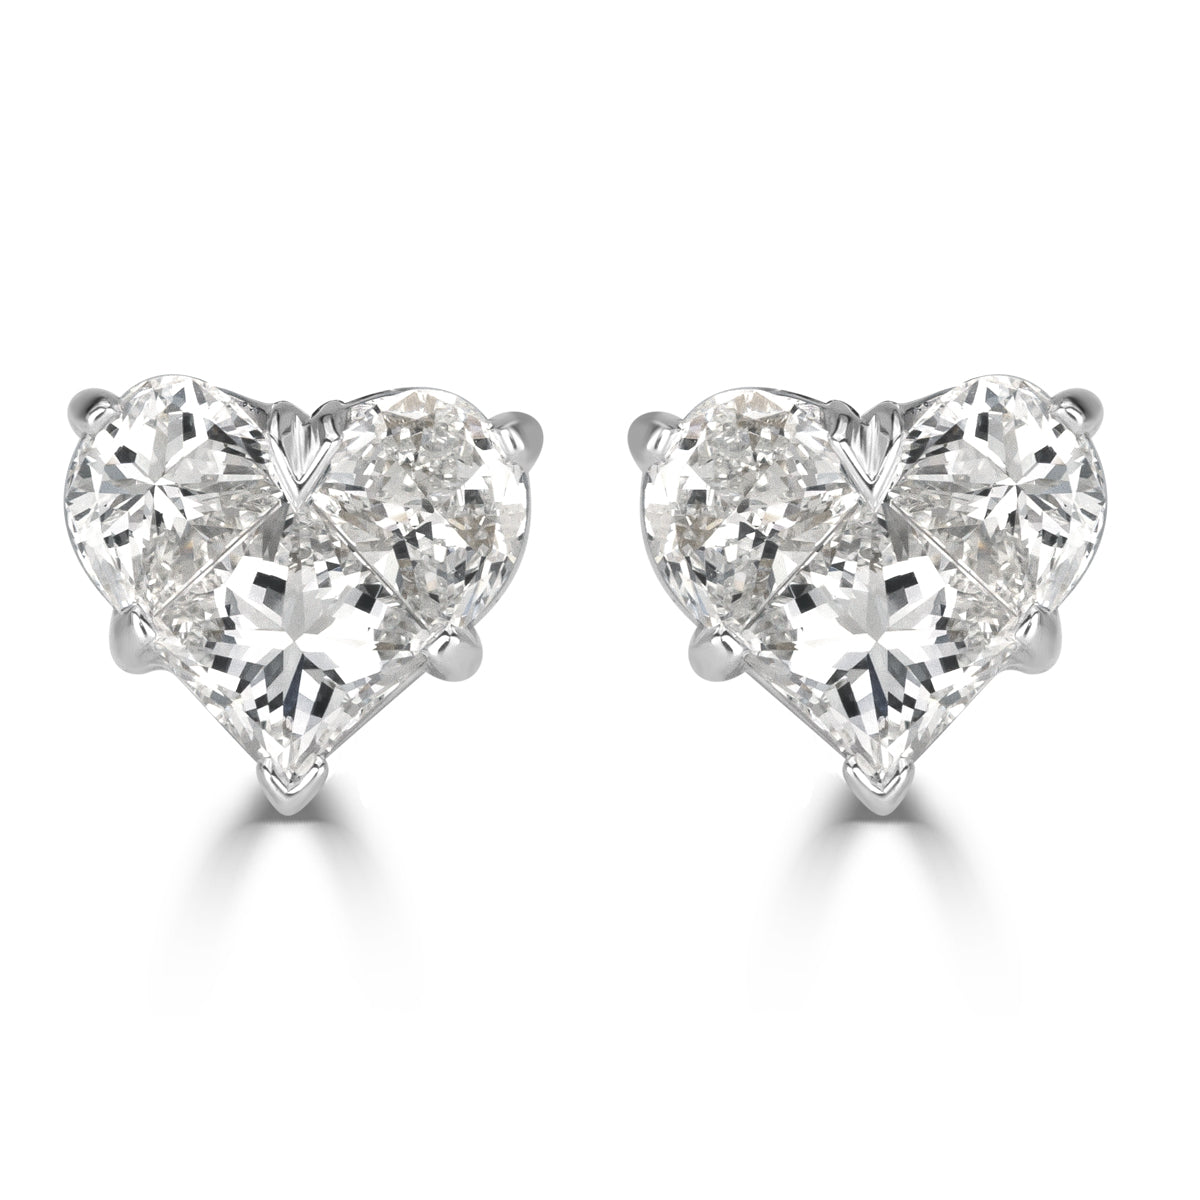 Heart Shape Diamond Stud Earrings, Platinum & White Gold